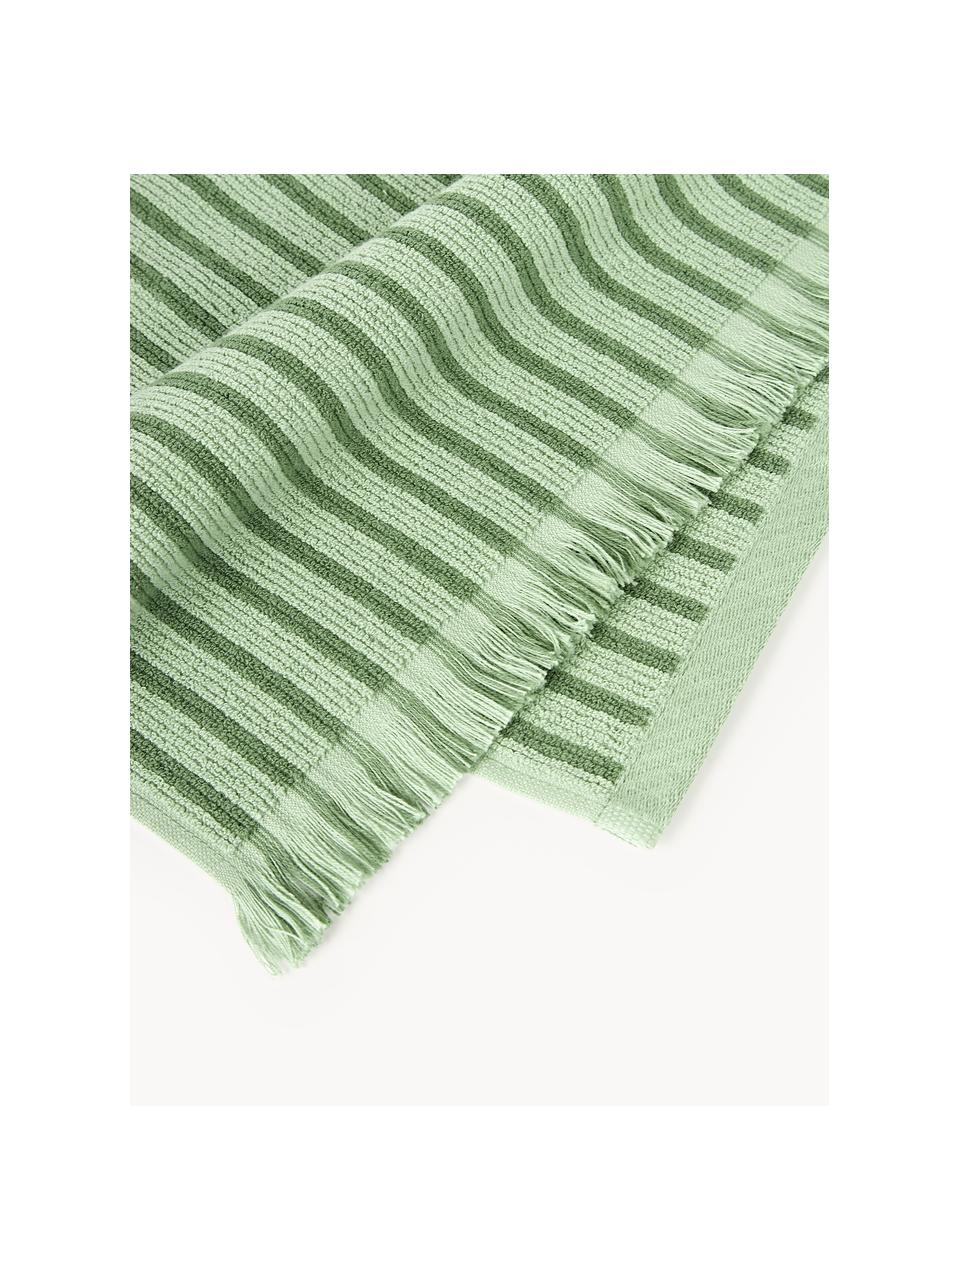 Komplet ręczników Irma, różne rozmiary, Zielony, 4 elem. (ręcznik do rąk, ręcznik kąpielowy)